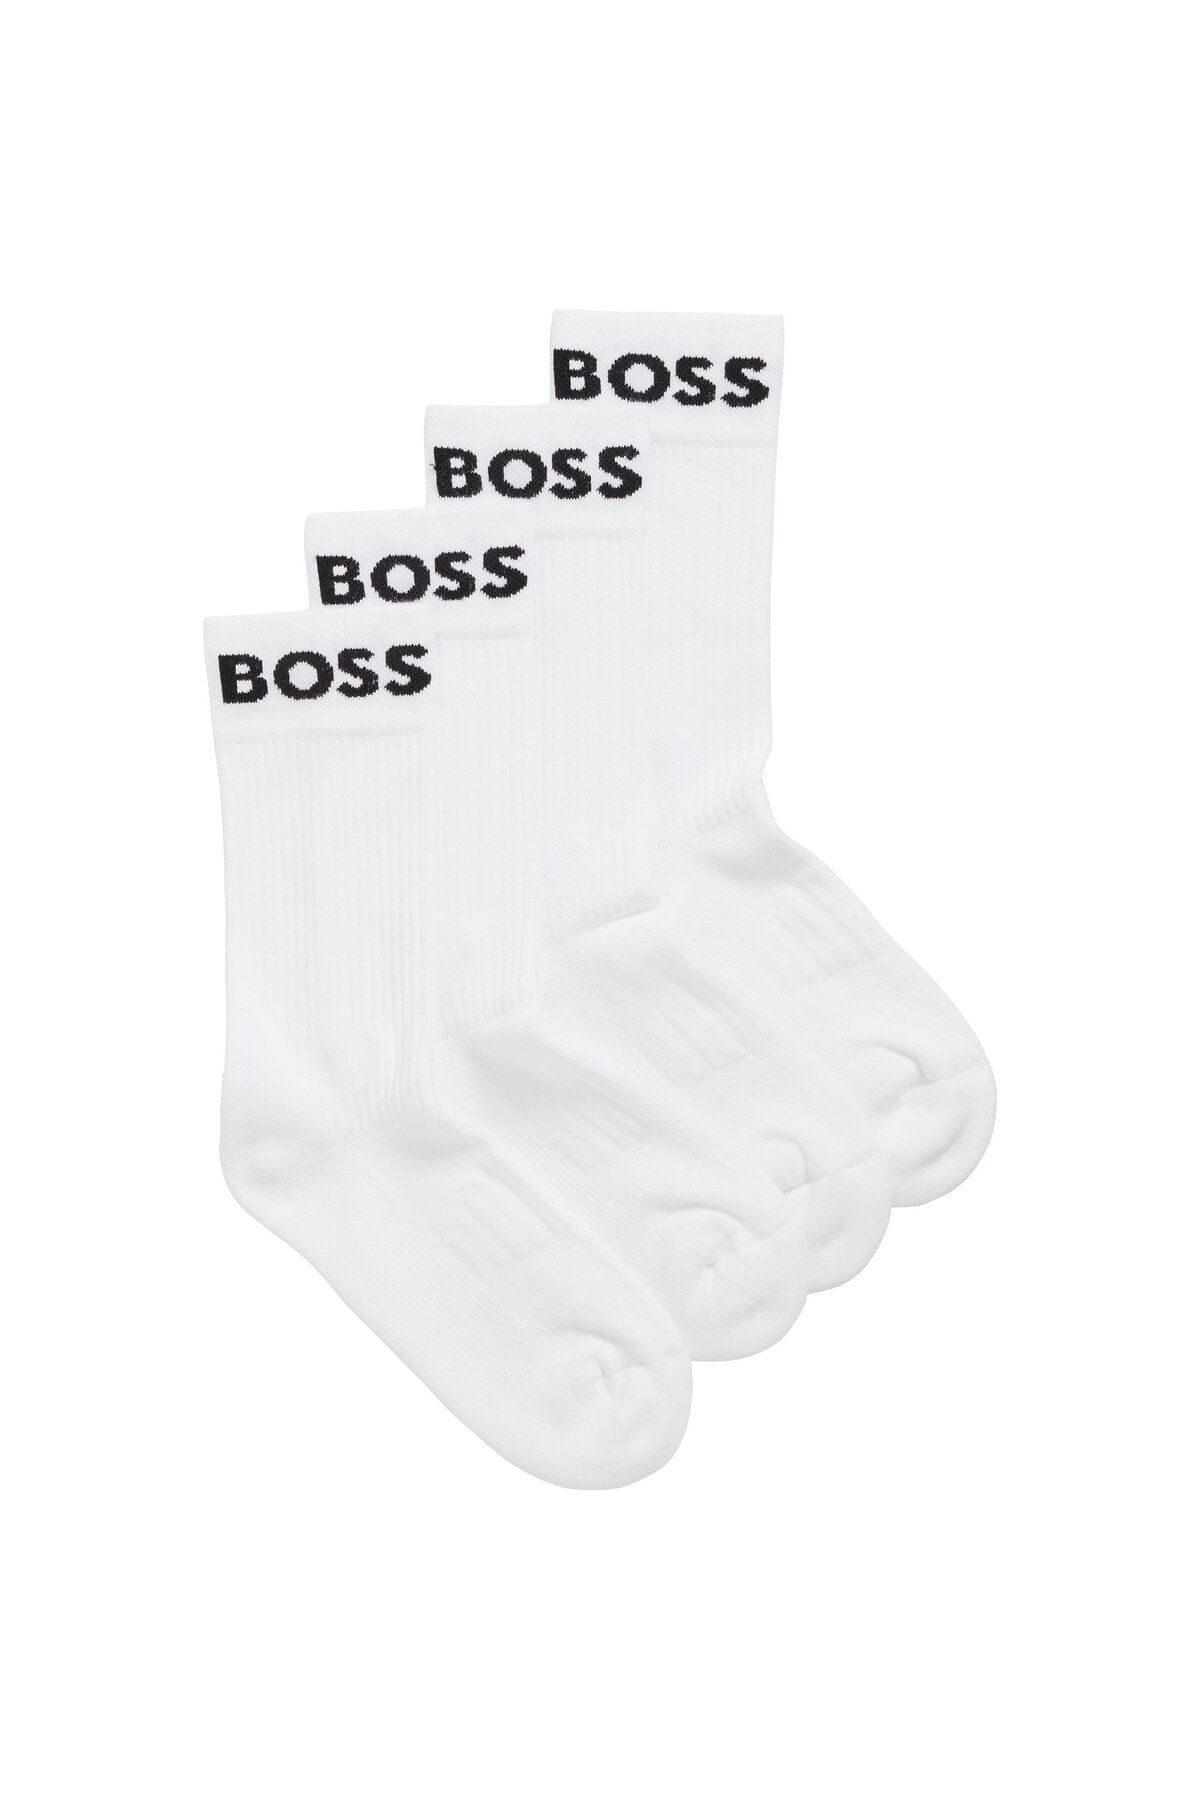 BOSS İkili Pakette Esnek Kumaştan Yarım Konç Çorap